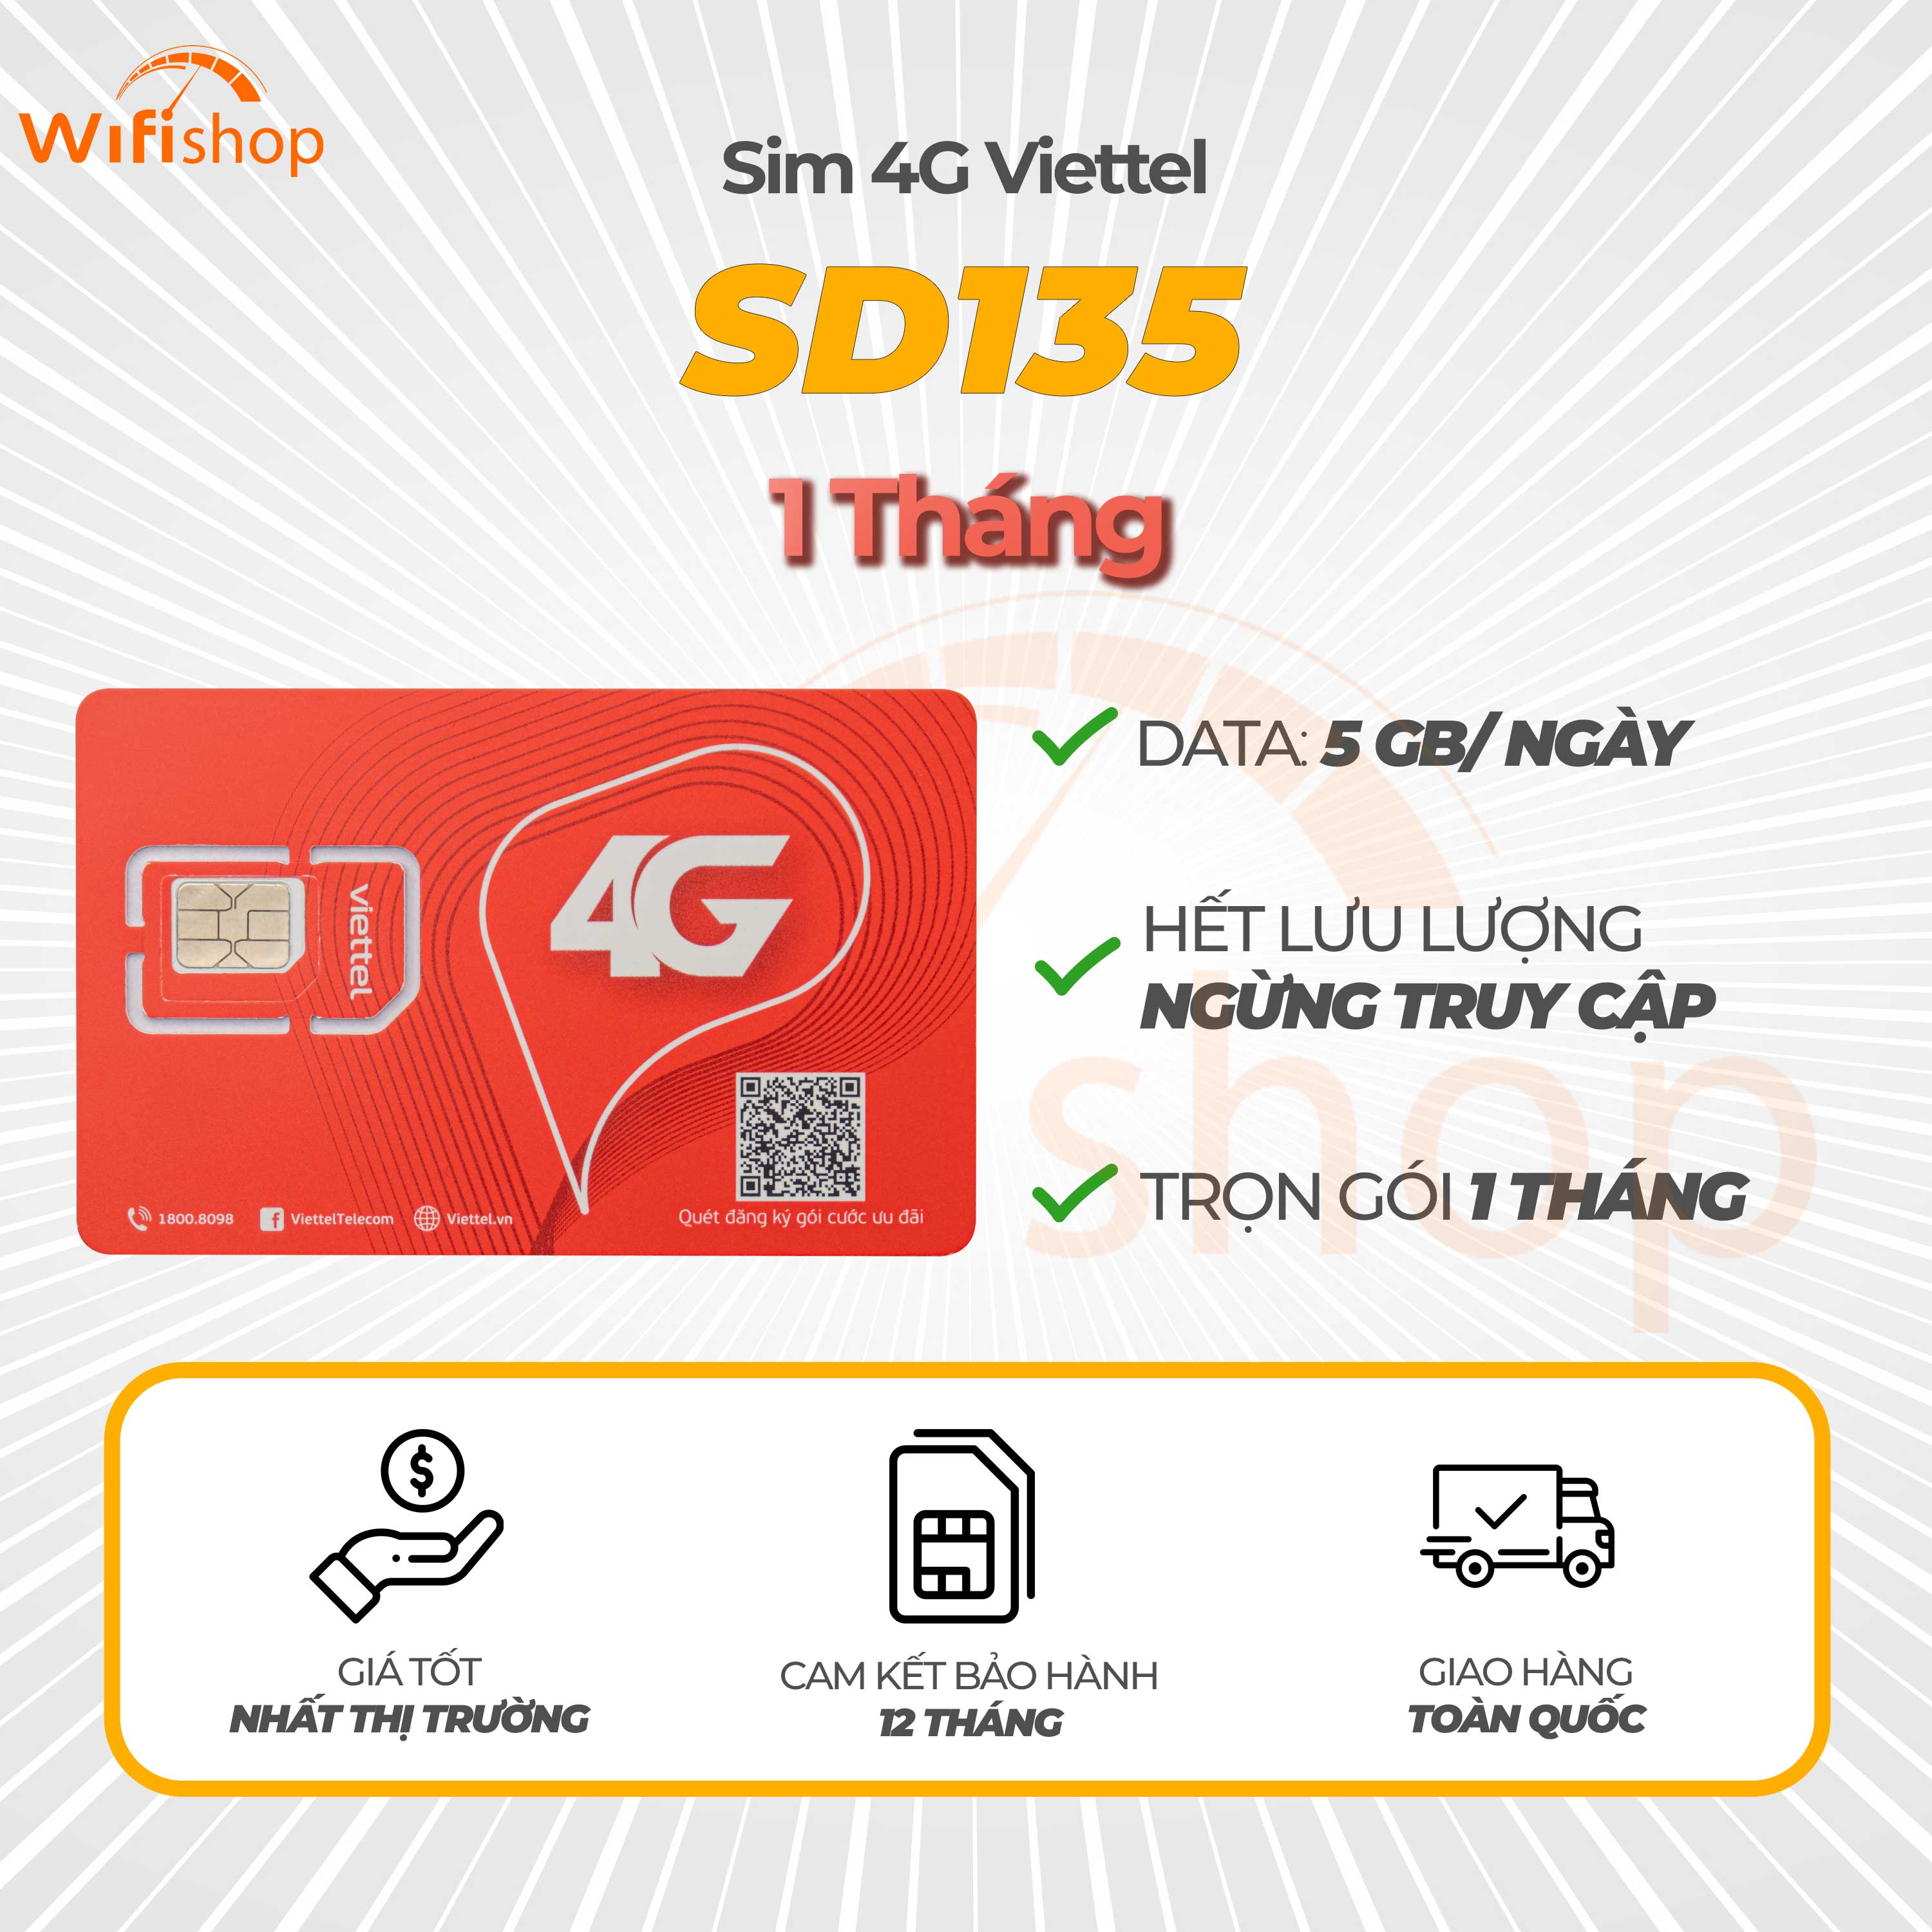 Sim Viettel SD135 5GB/Ngày (150GB/Tháng), Nạp tiền hàng tháng